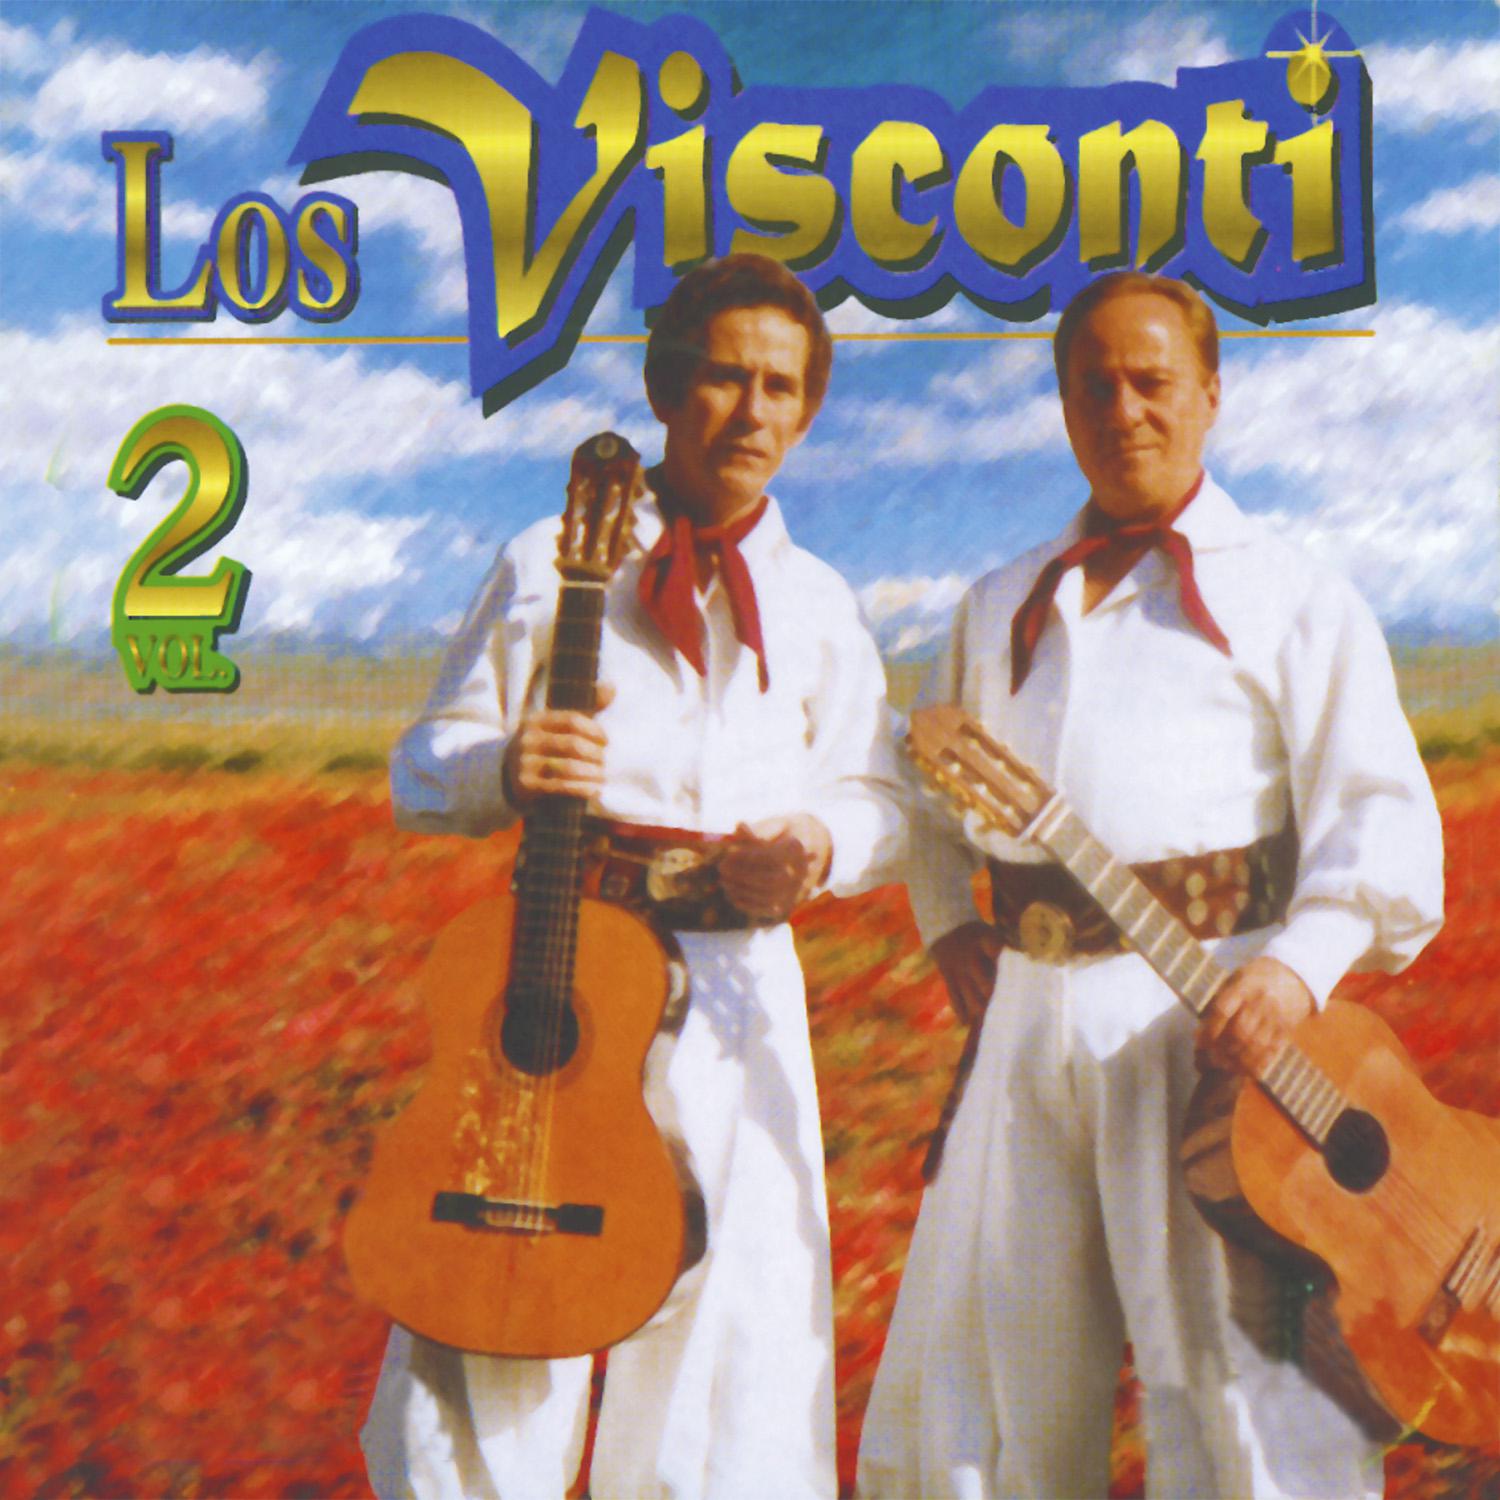 Los Visconti, Vol. 2